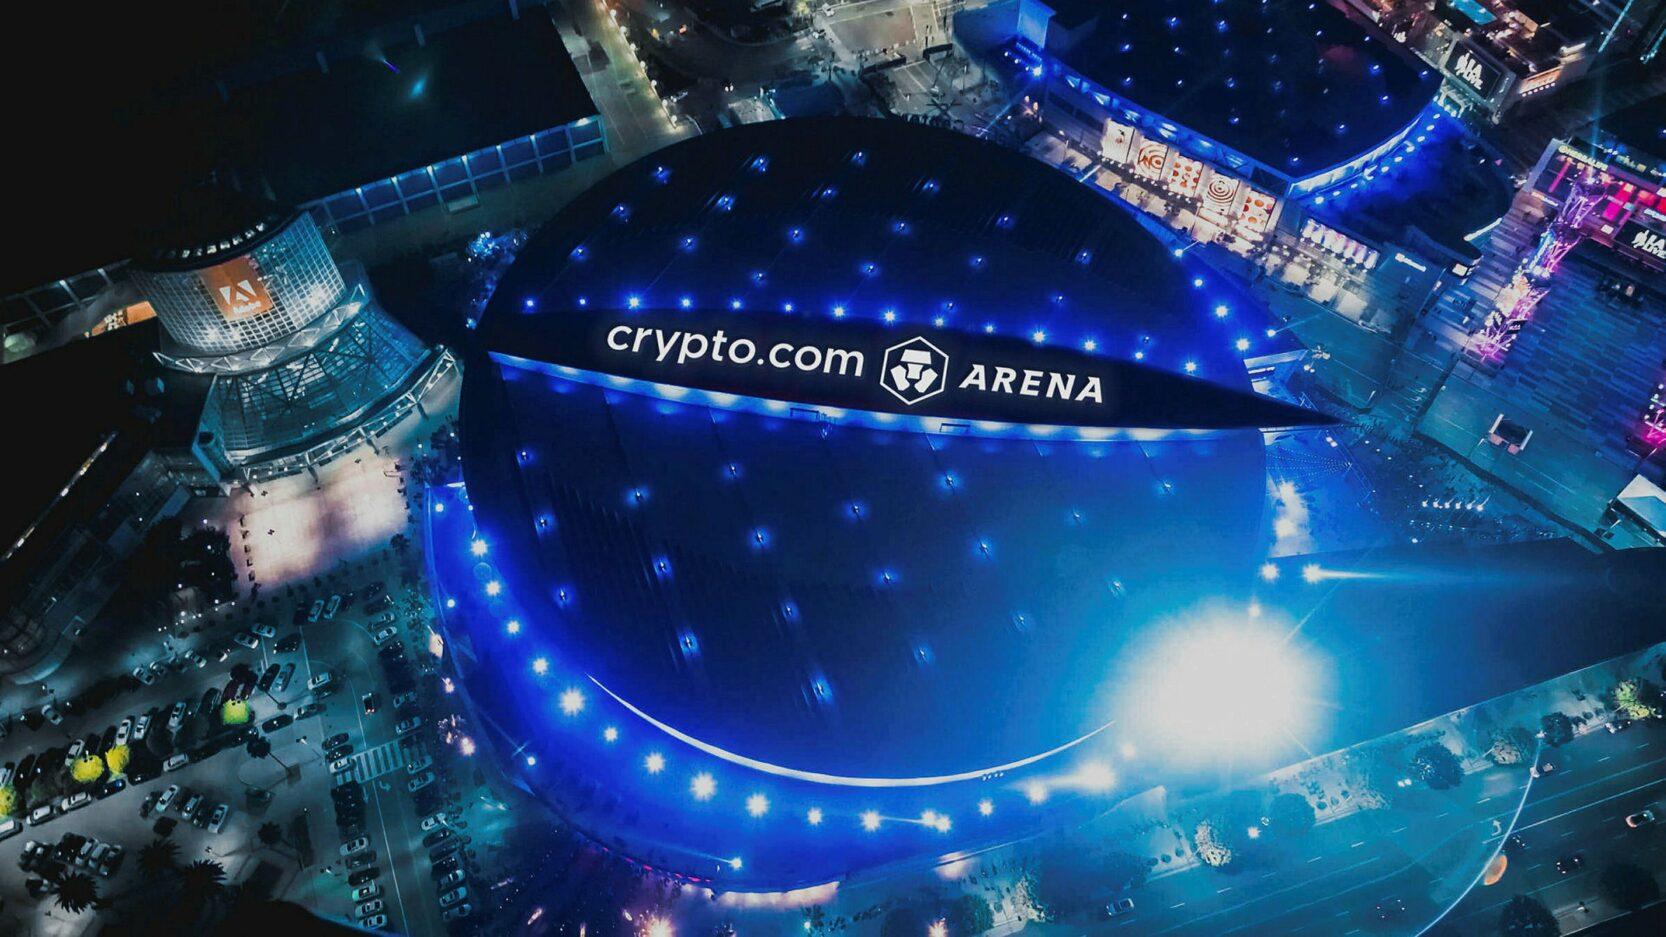 Crypto.com.com Arena